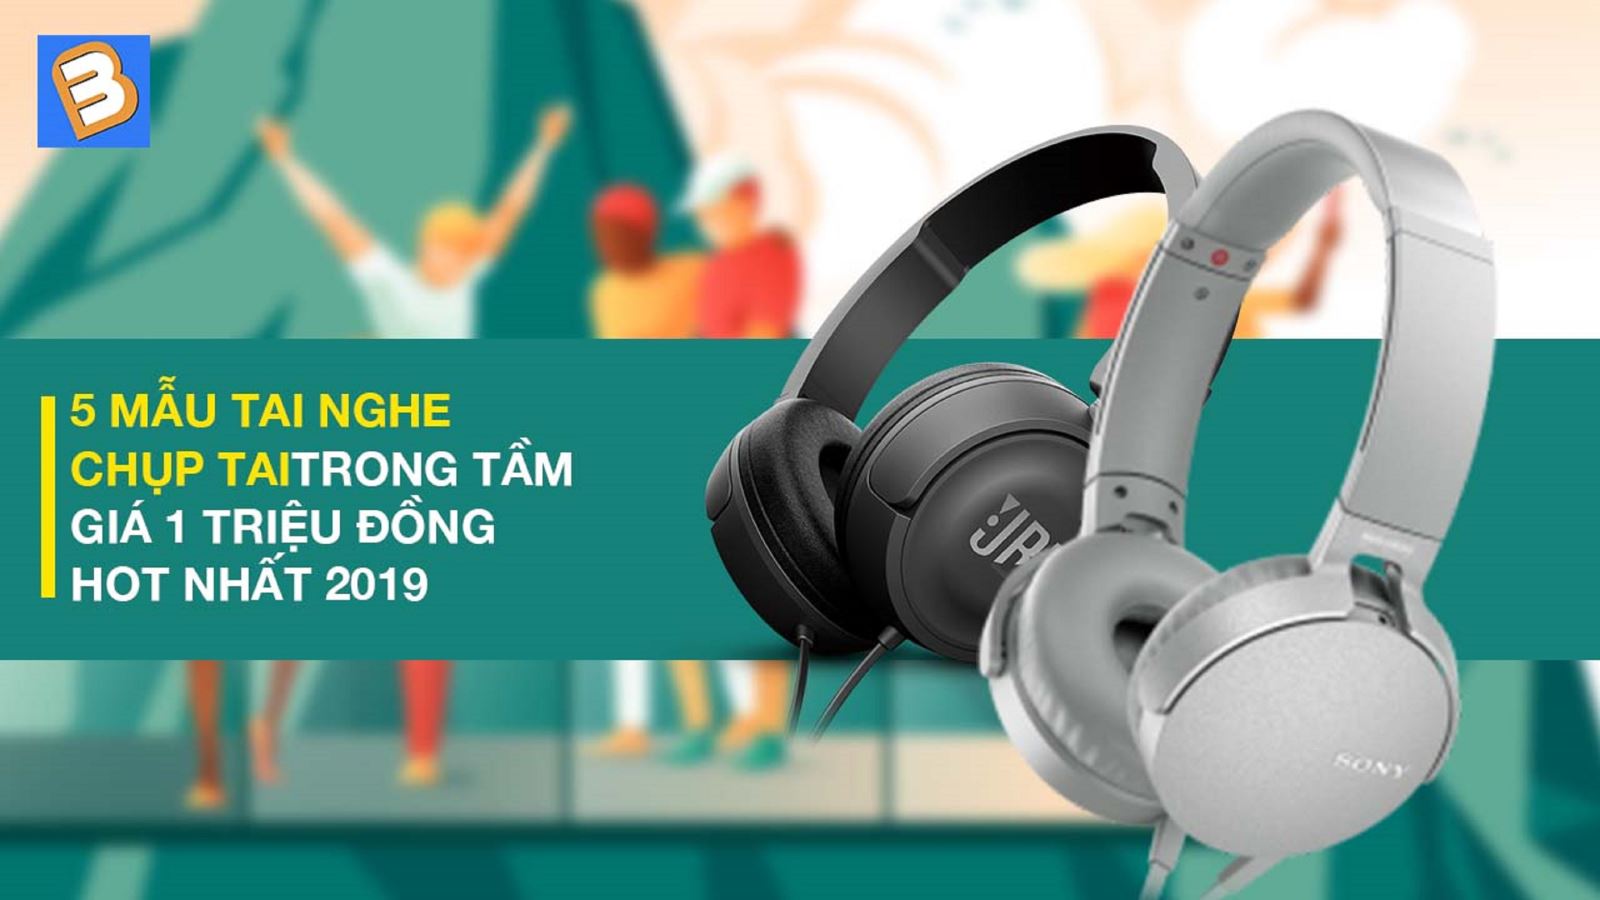 5 mẫu tai nghe chụp tai trong tầm giá 1 triệu đồng HOT nhất 2019